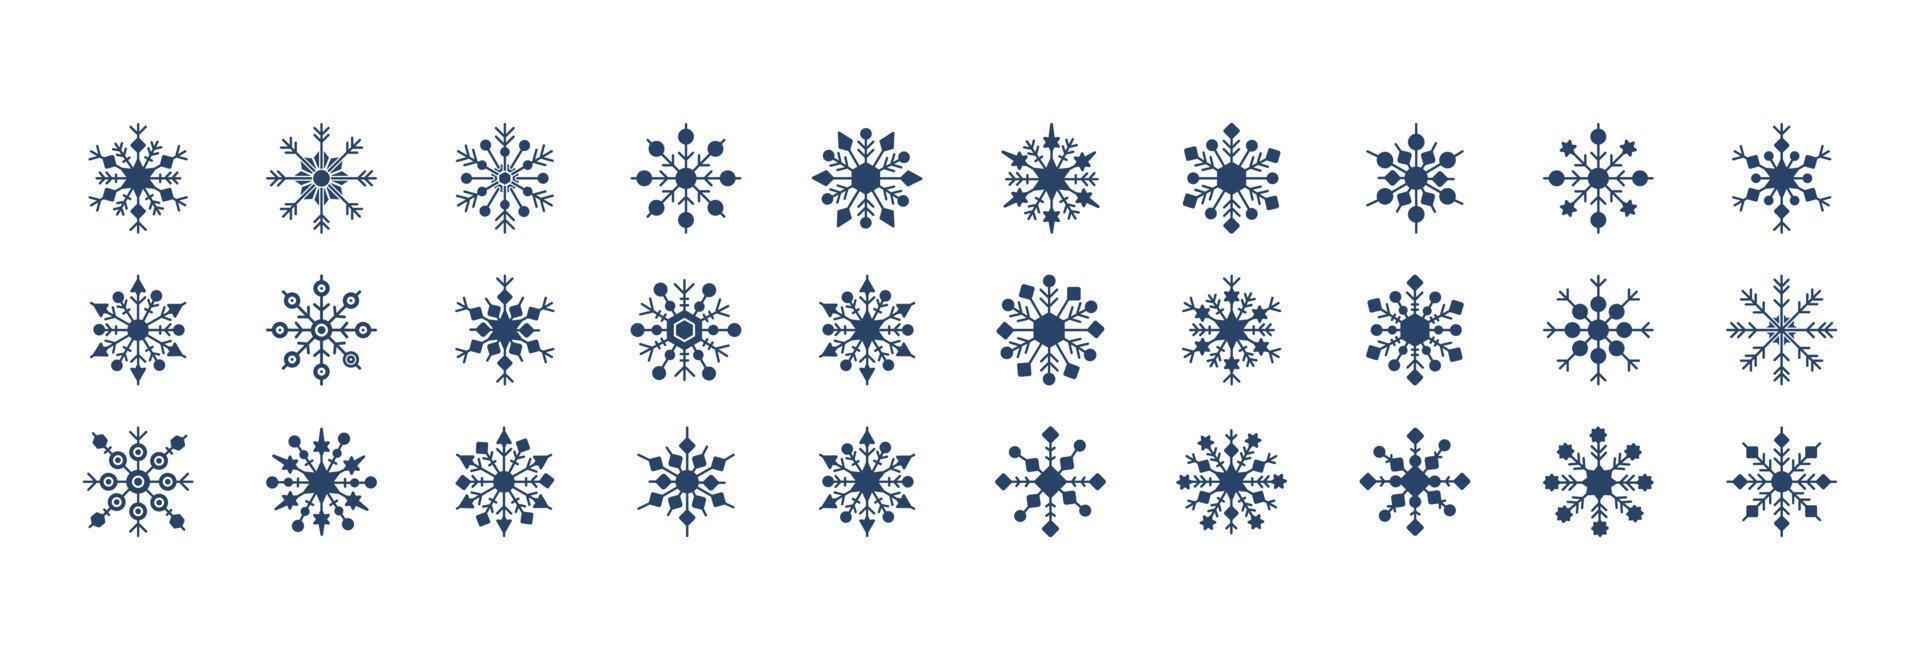 colección de íconos relacionados con los copos de nieve, incluidos íconos como frío, nieve, invierno y más. ilustraciones vectoriales, conjunto perfecto de píxeles vector